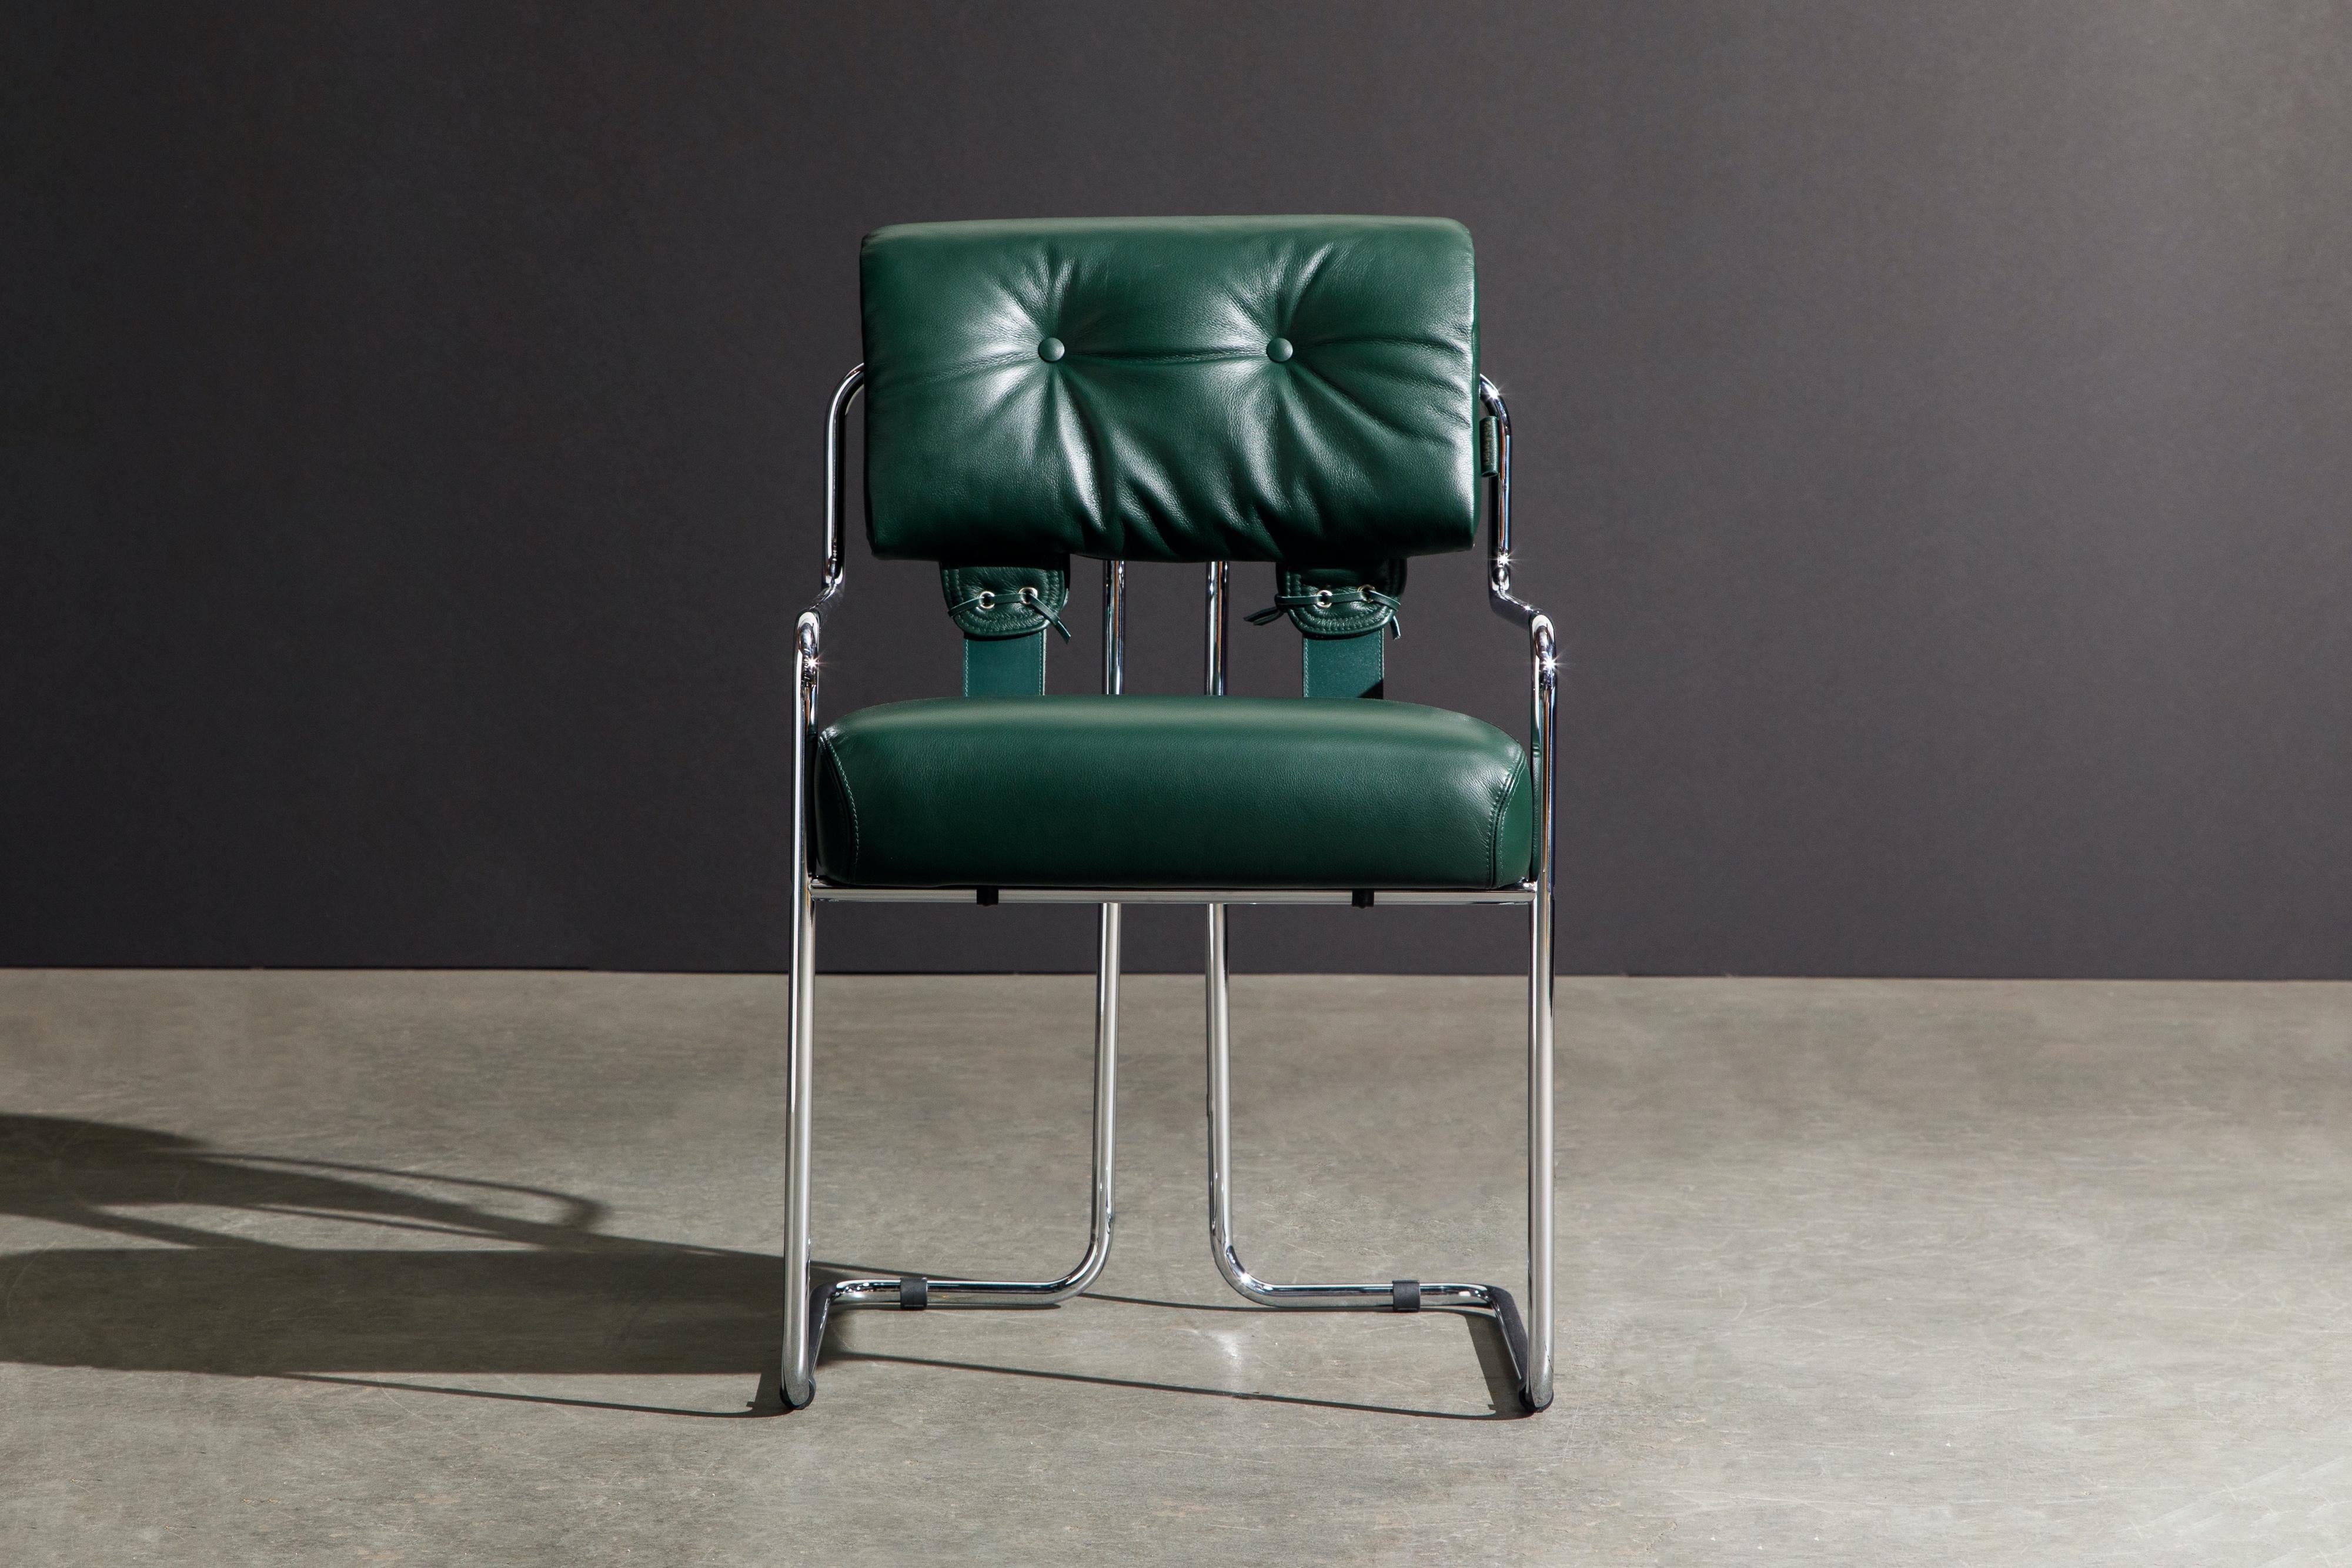 Satz von acht (8) Tucroma Sesseln (Brand New) in schönem smaragdgrünem Leder mit polierten Chromrahmen. Die Sitze und Rückenlehnen sind mit geschmeidigem grünem Leder gepolstert und an zierlichen polierten Stahlrohrrahmen befestigt. Die Rückenlehnen